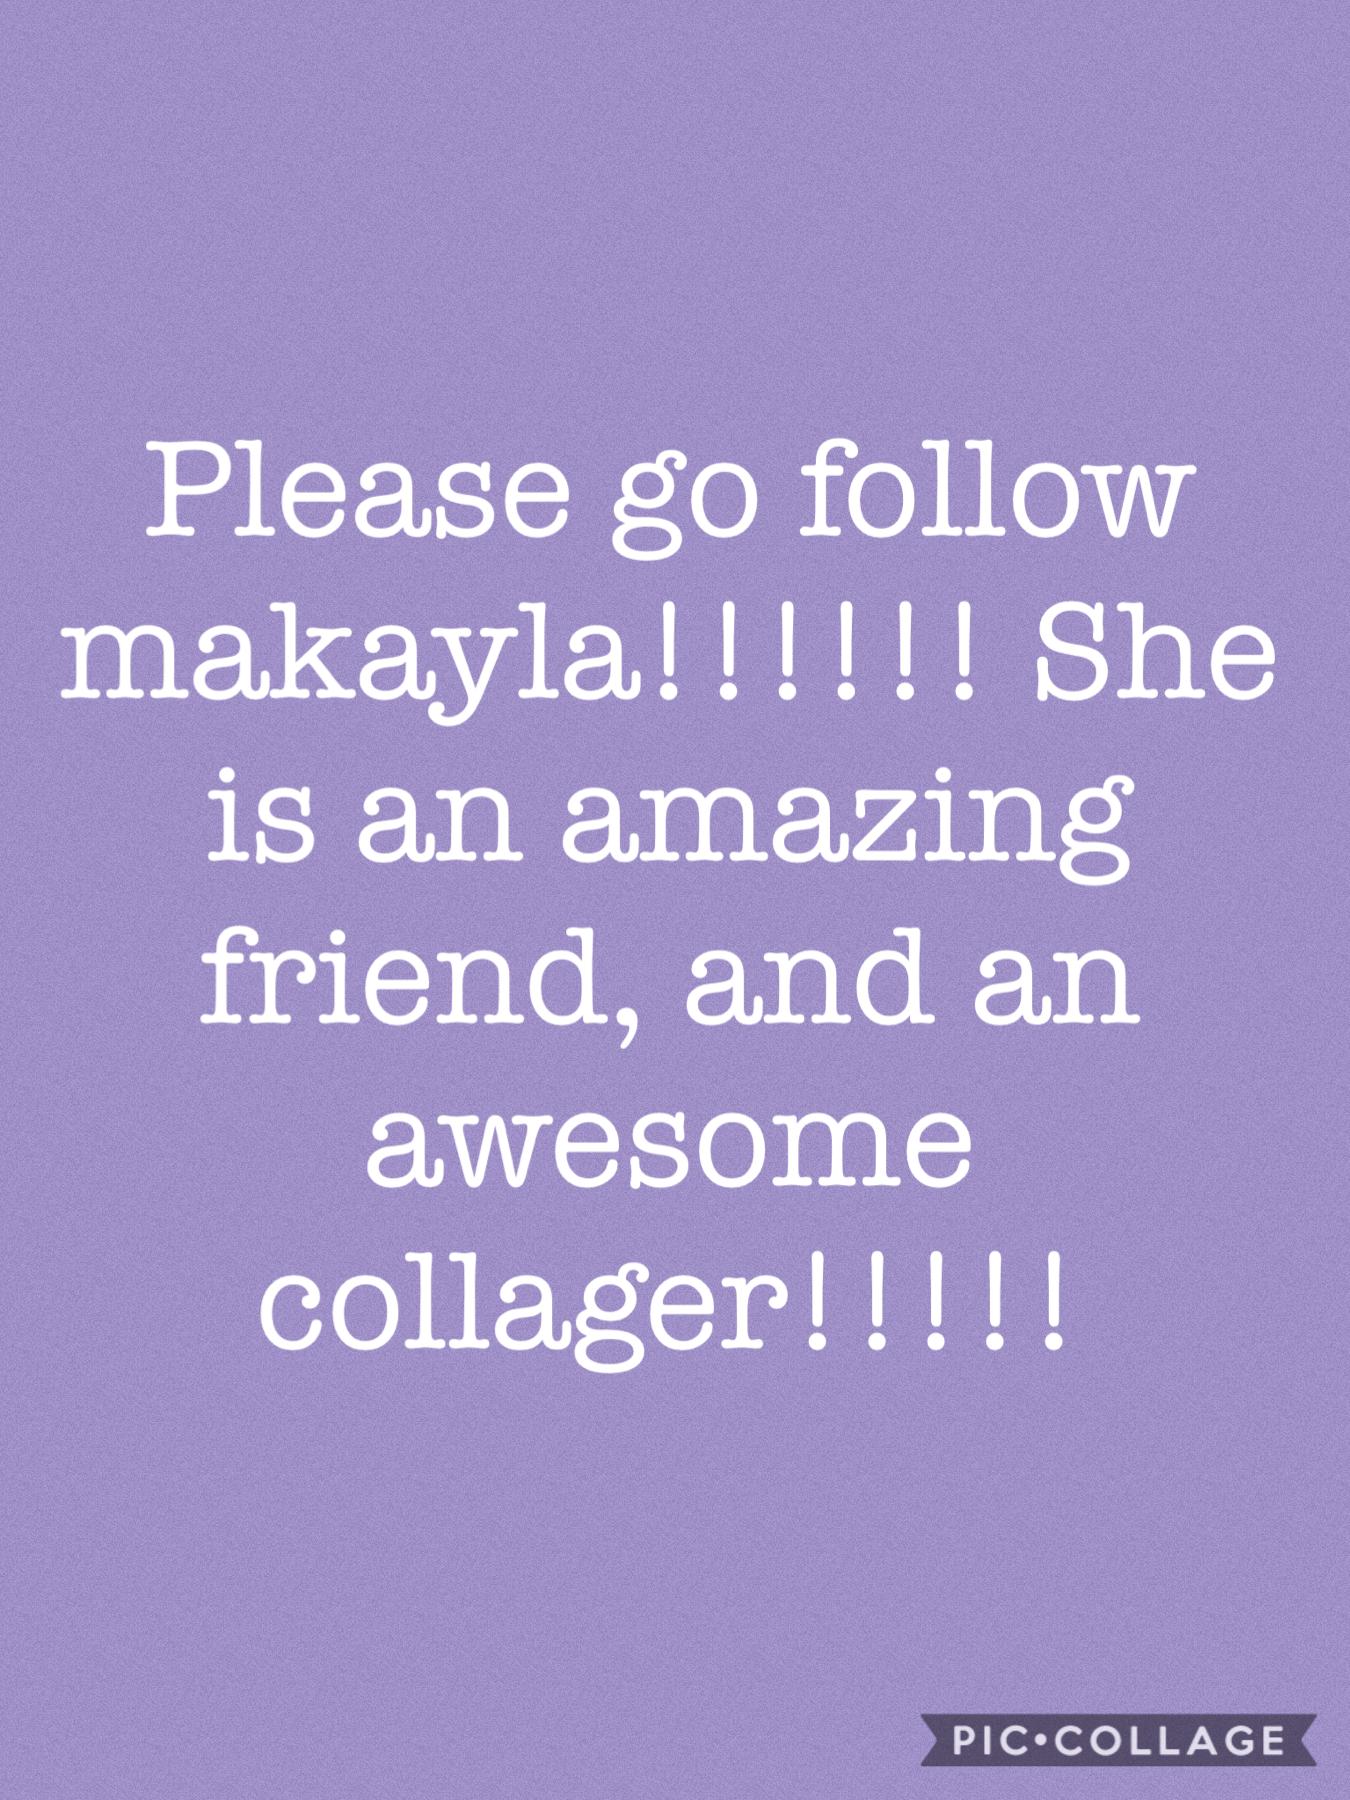 Please follow her!